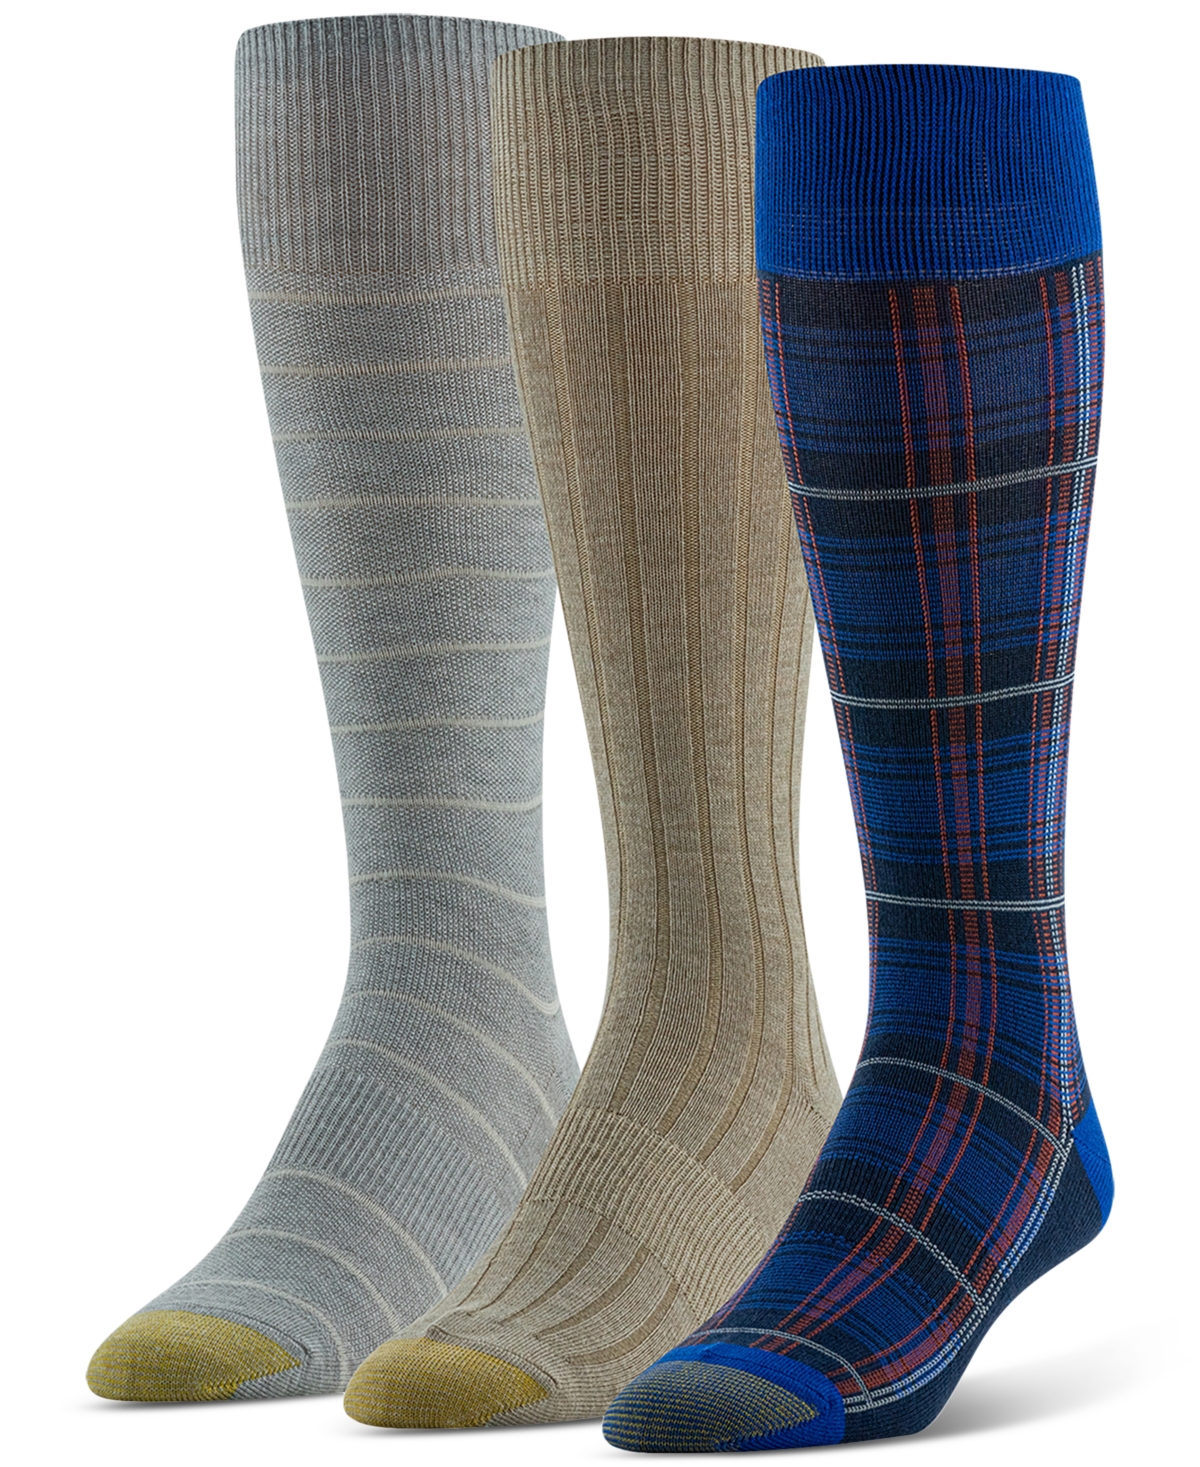 Men's Multi-Pattern Socks - 3 pk. - Asst